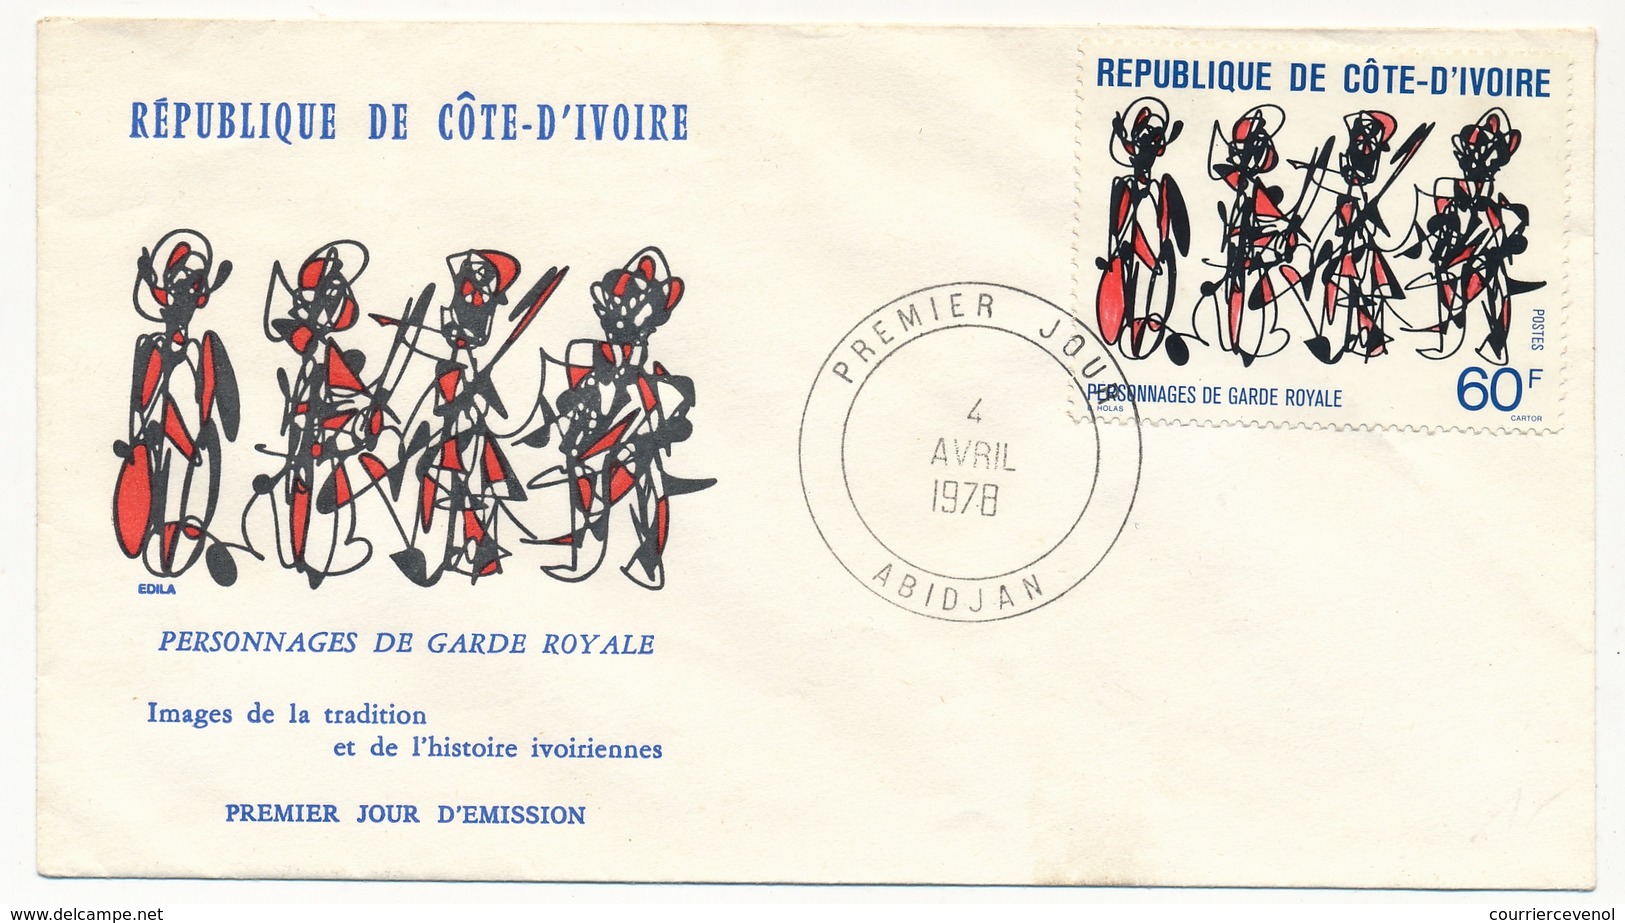 Côte D'Ivoire => 2 Enveloppes FDC - Personnages De Garde Royale - Abidjan - 4 Avril 1978 - Ivory Coast (1960-...)